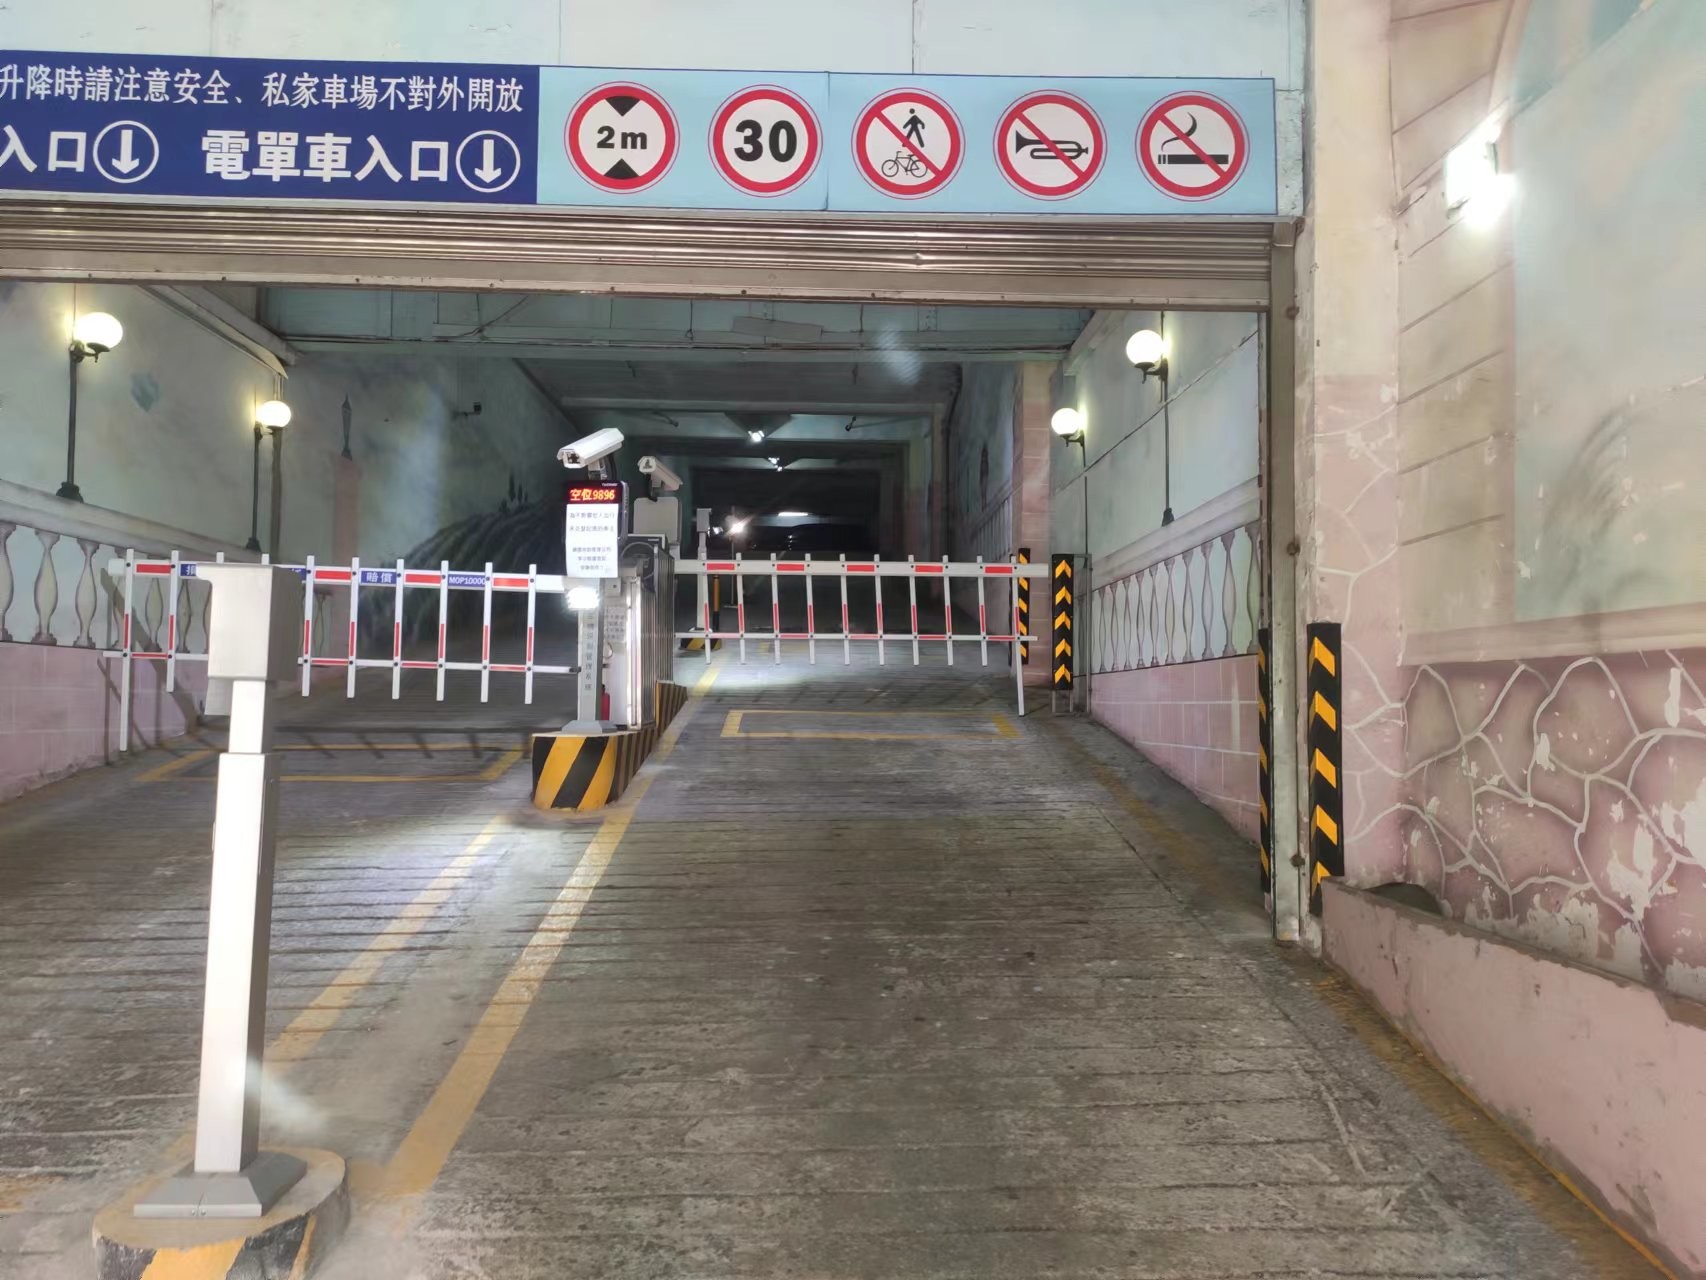 ultimo caso aziendale circa Progetto di parcheggio di LPR a Macao Cina